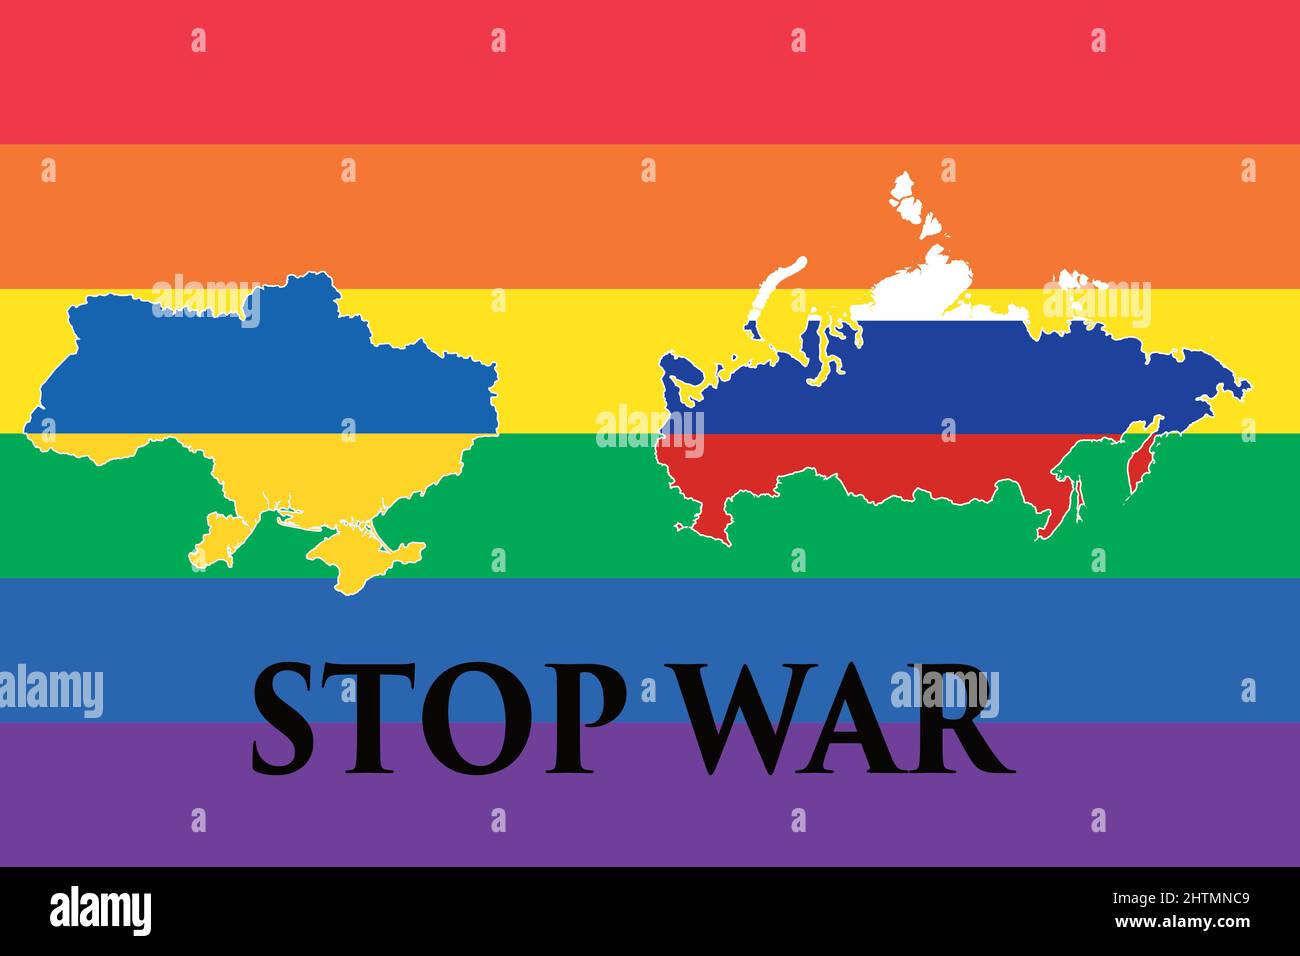 Mappa con la bandiera dell'ucraina e mappa con la bandiera della russia sullo sfondo la bandiera della pace, fermare la guerra. Crisi nelle relazioni internazionali. Guerra Foto Stock